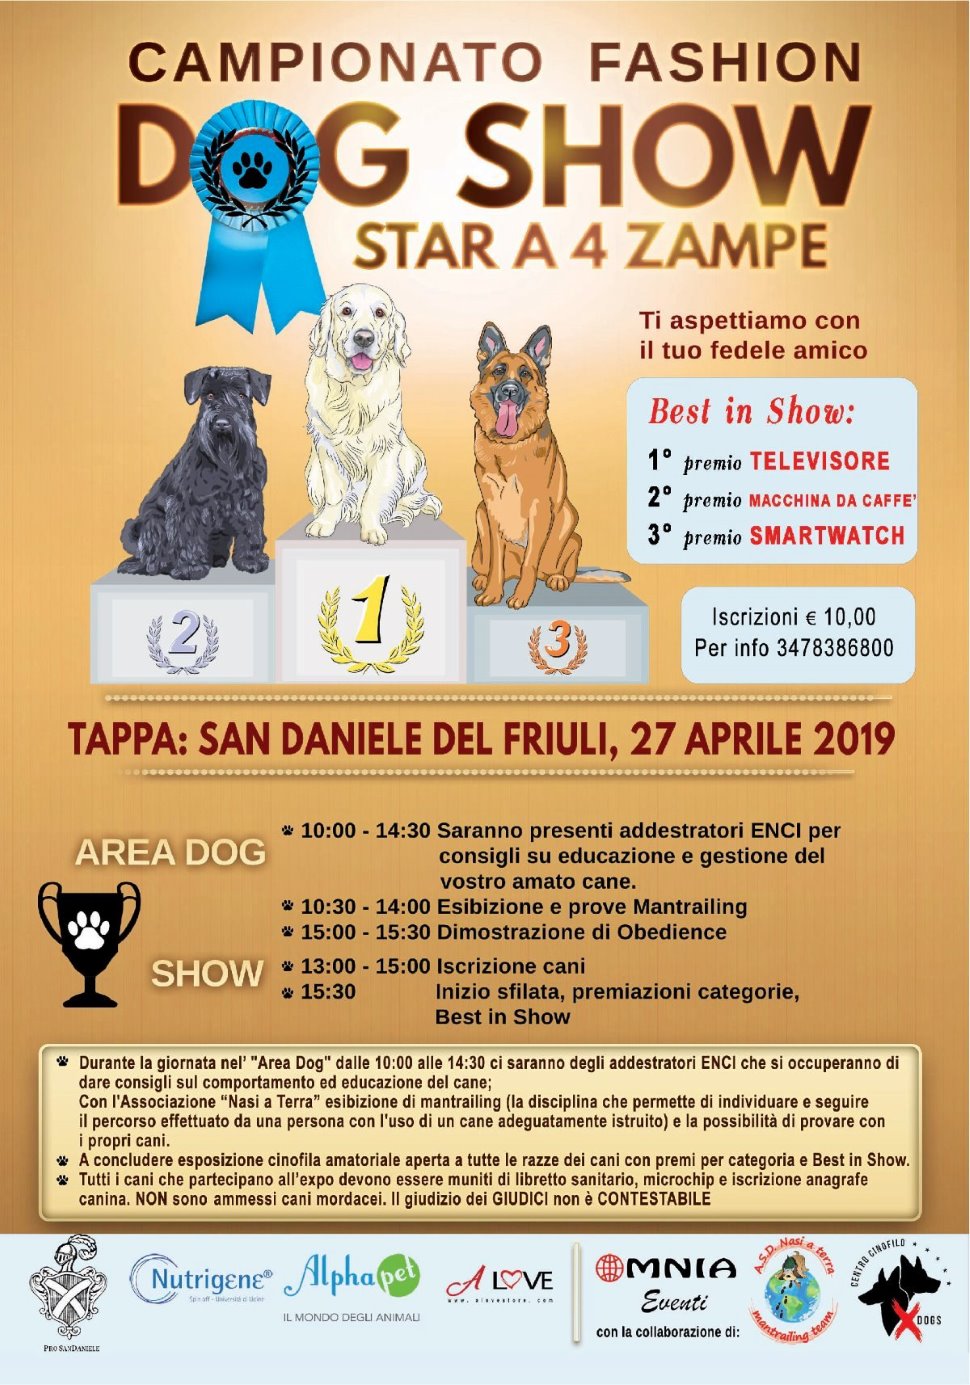 
FASHION DOG SHOW 2019 SAN DANIELE SBOCCIA
